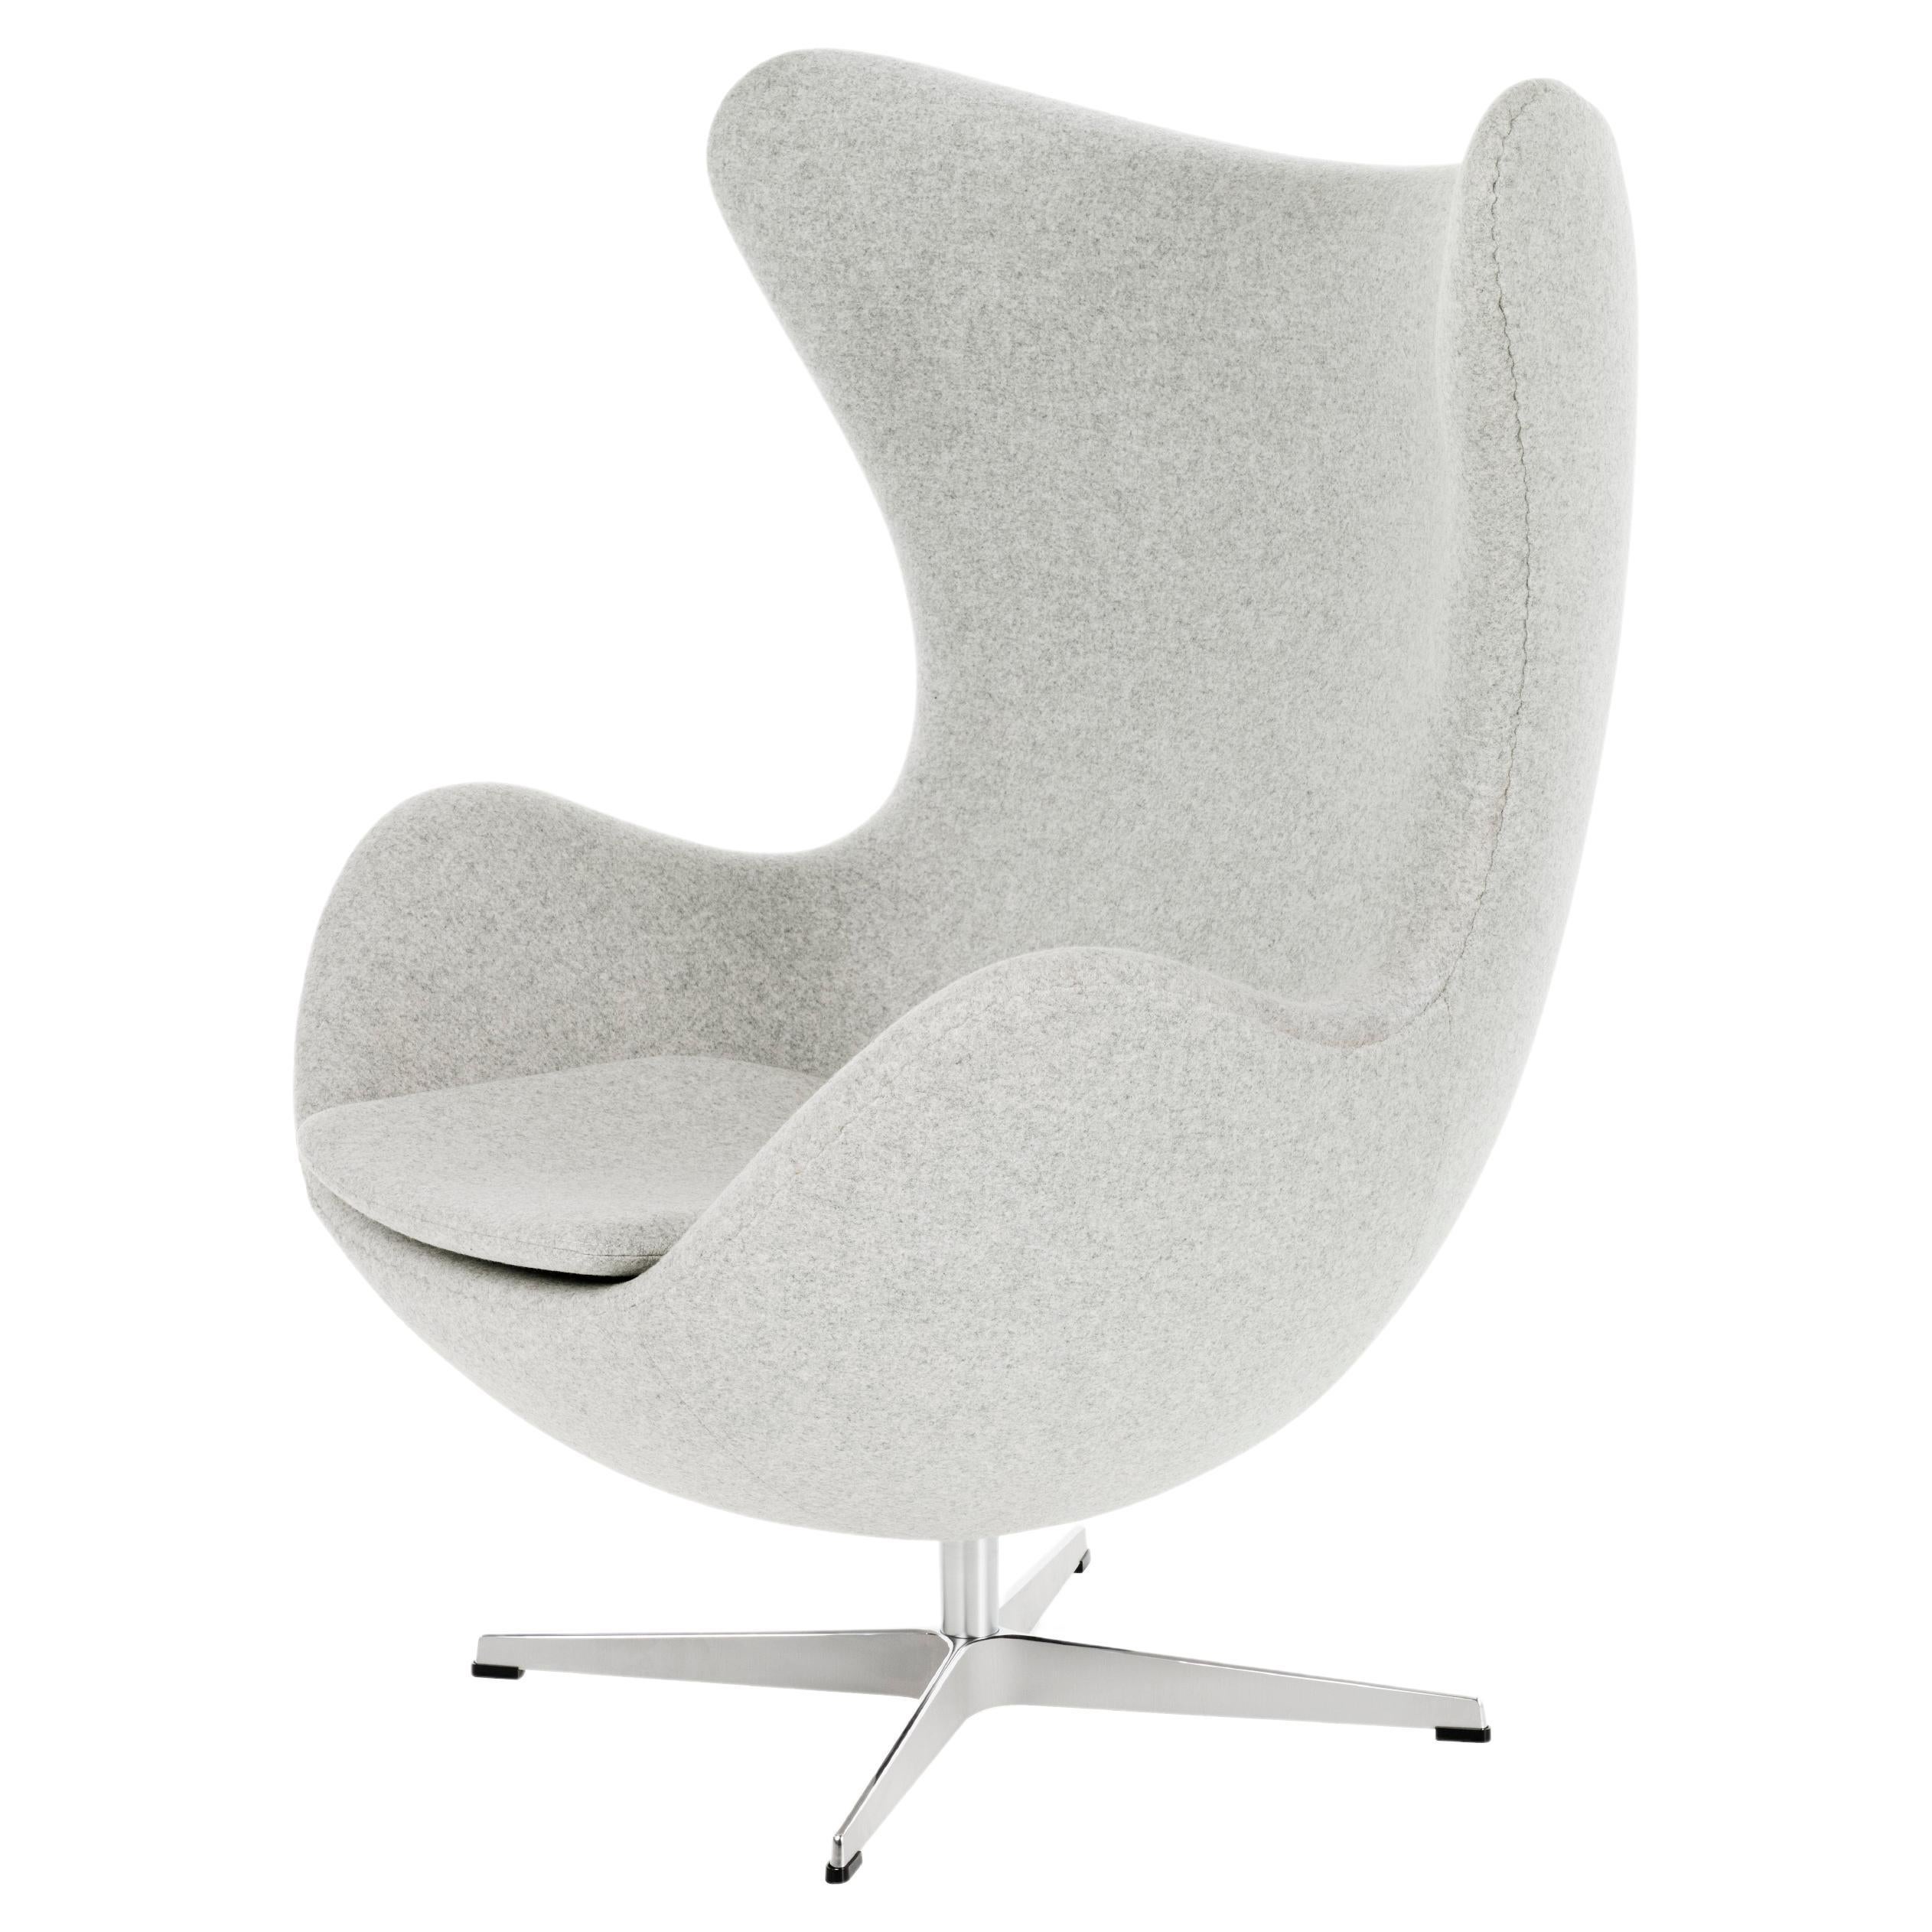 Arne Jacobsen 'Egg' Chair for Fritz Hansen in Fabric Upholstery (Cat. 2) For Sale